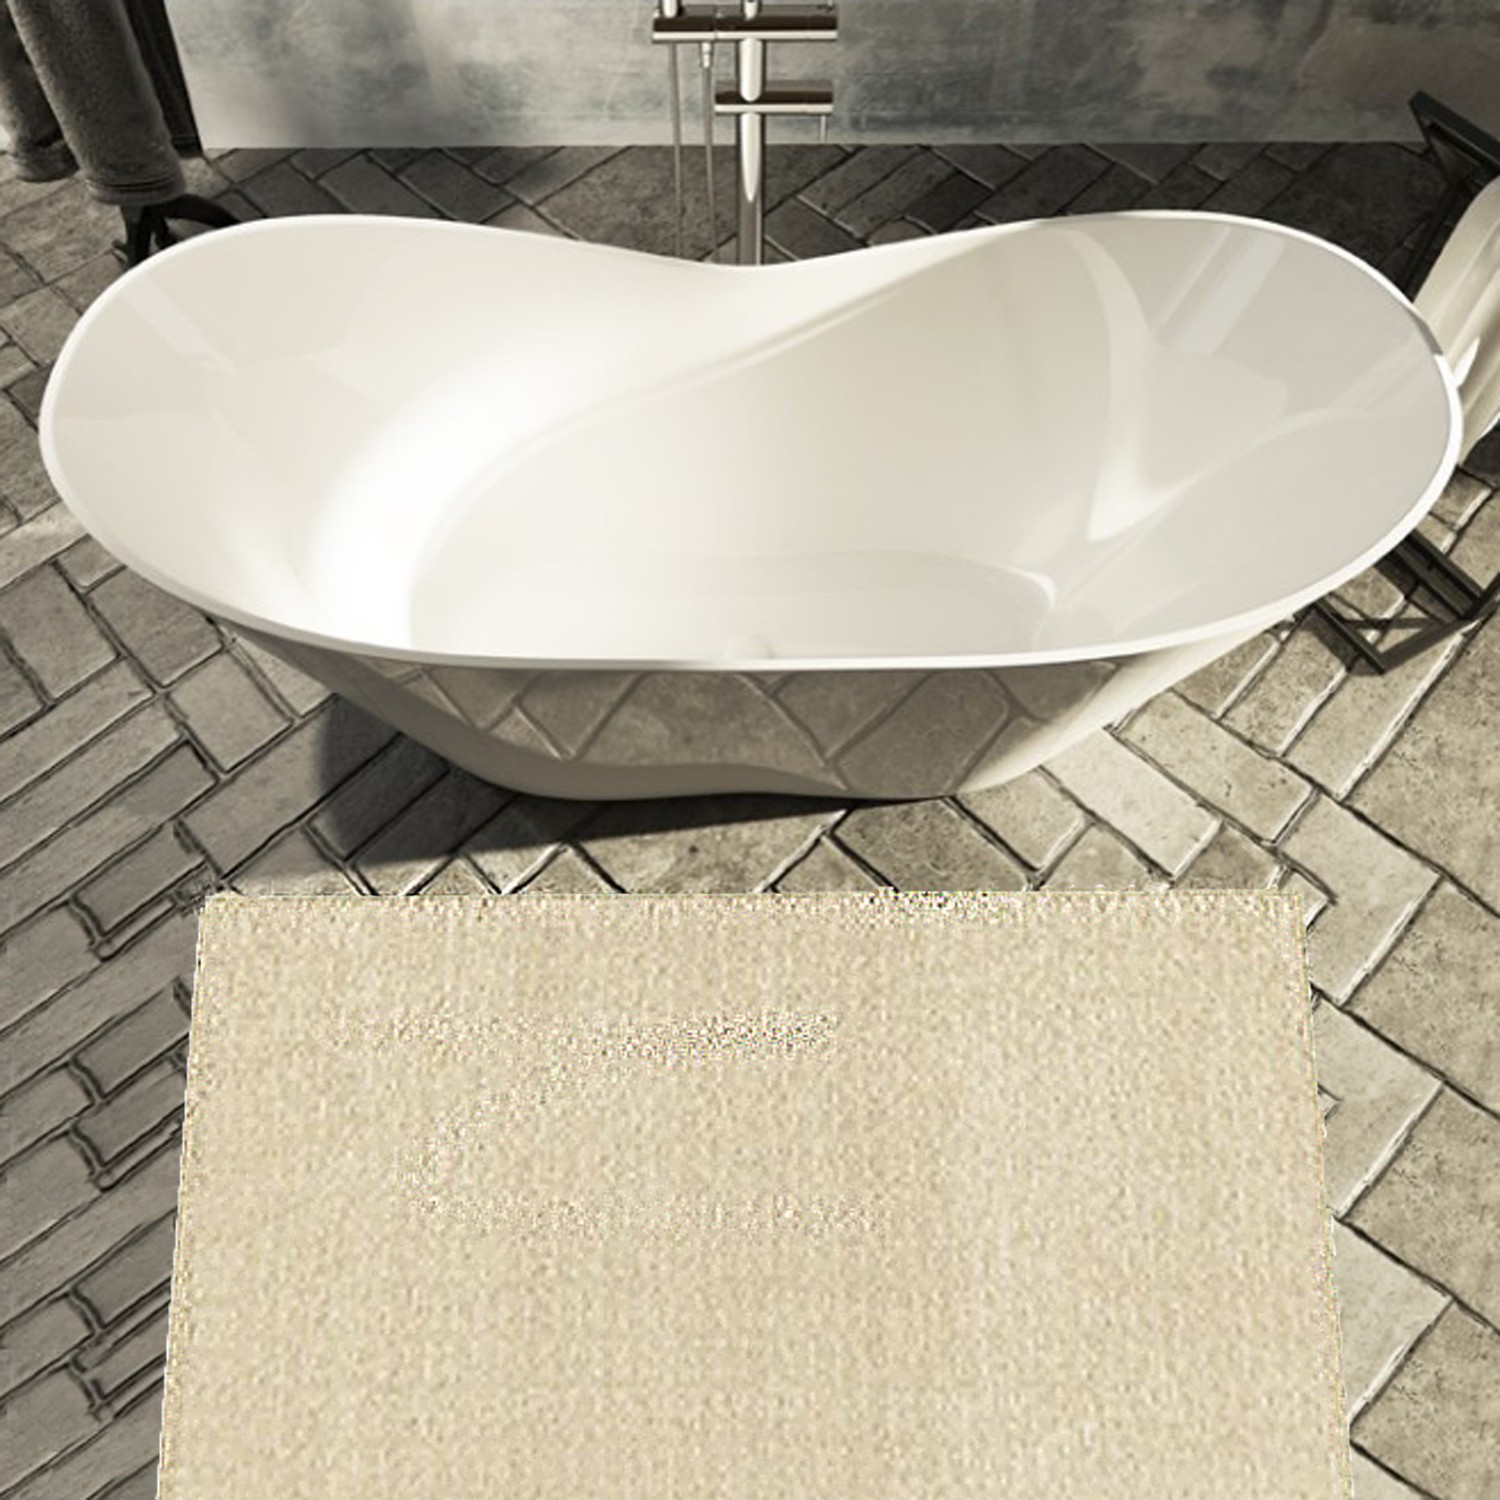 Il relax  proprio a casa tua: la vasca da bagno